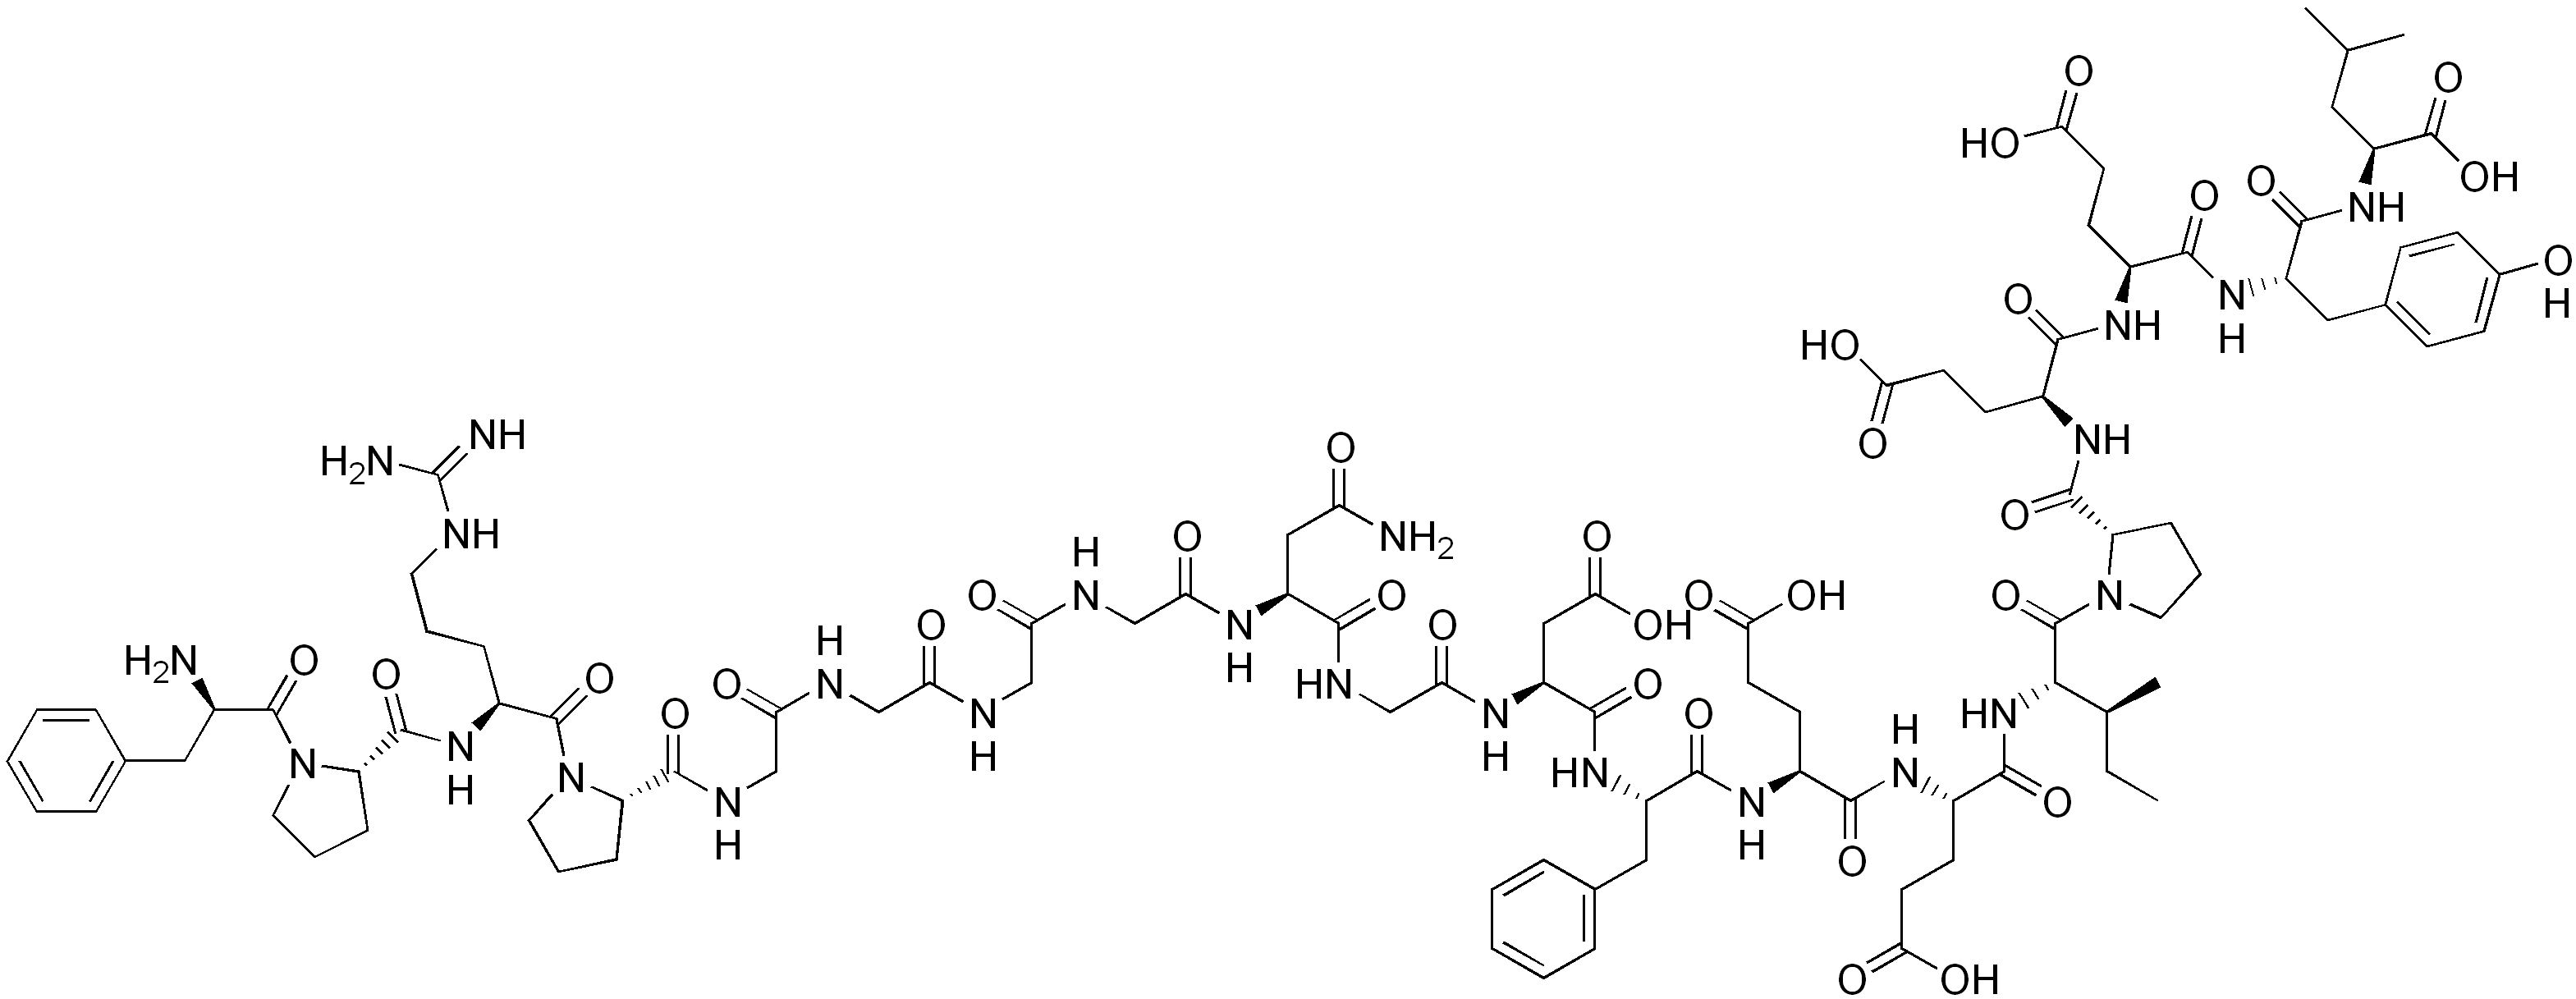 Bivalirudine (trifluoroacétate de) hydraté - Pharmacocinétique et effets indésirables. Les médicaments avec le principe actif Bivalirudine (trifluoroacétate de) hydraté - Medzai.net